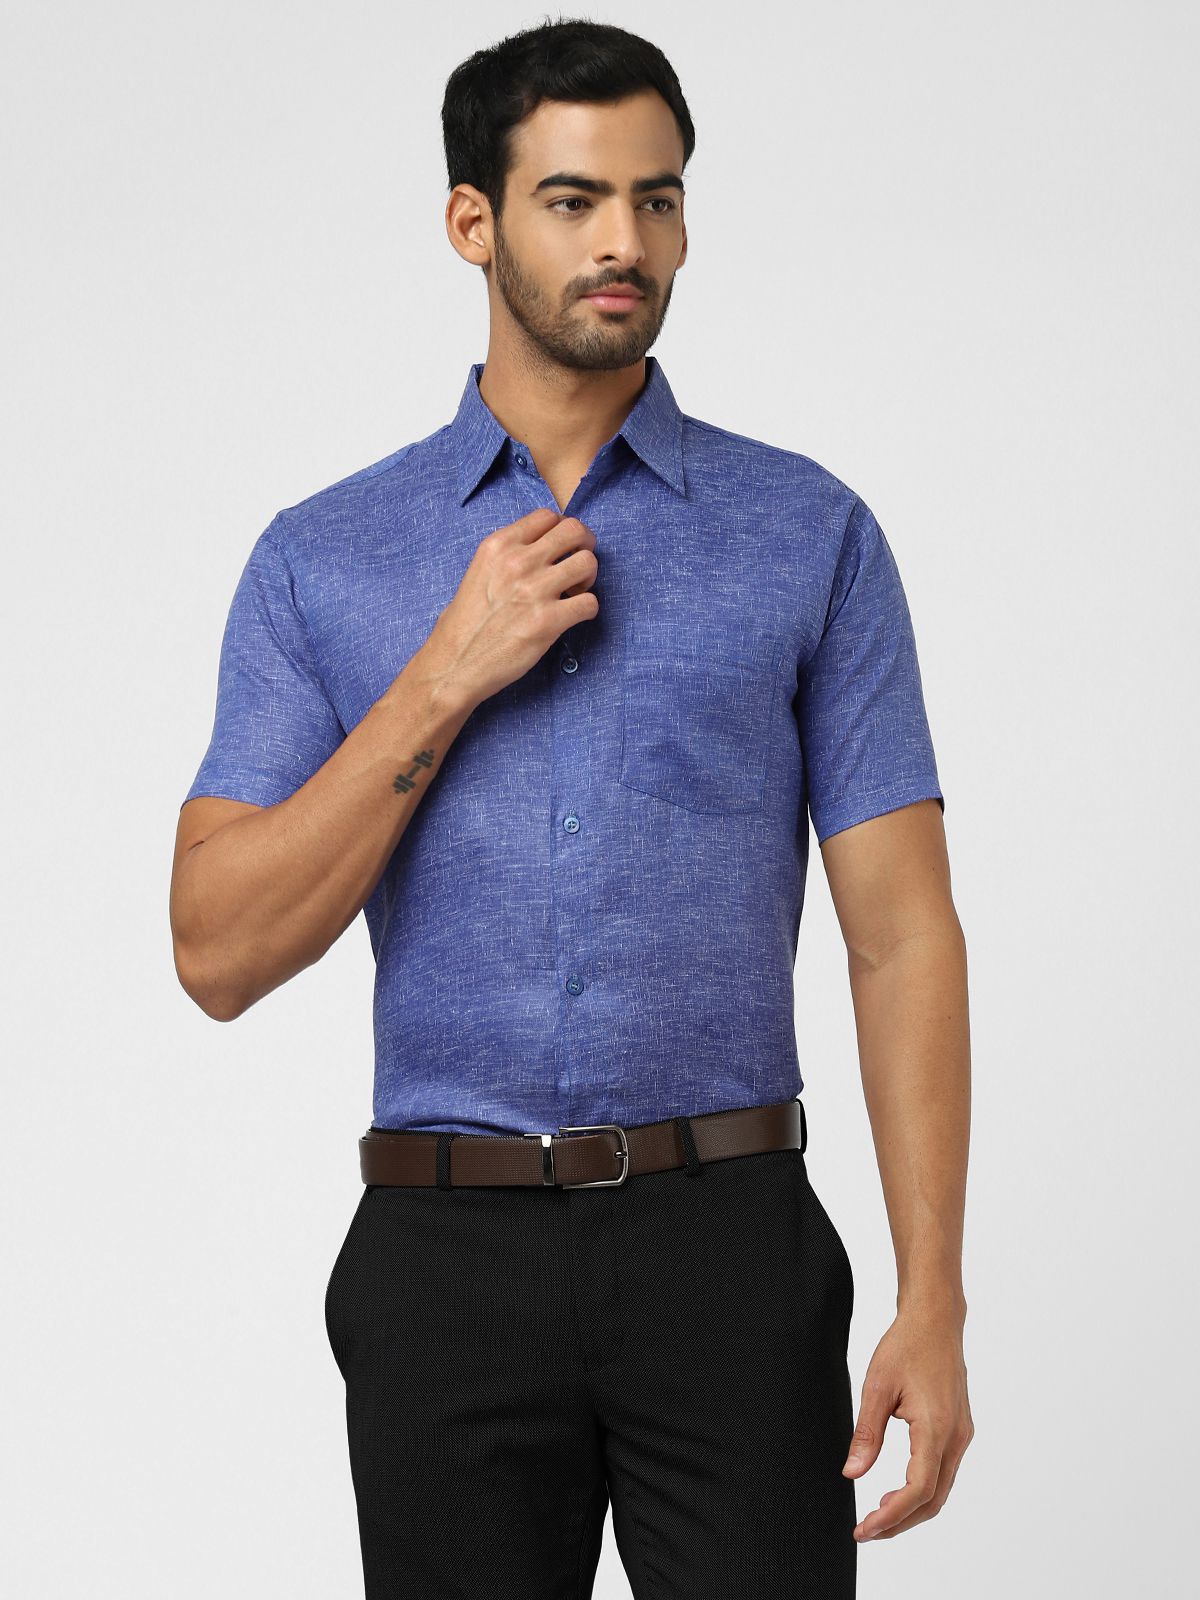     			DESHBANDHU DBK - Blue Linen Regular Fit Men's Formal Shirt (Pack of 1)